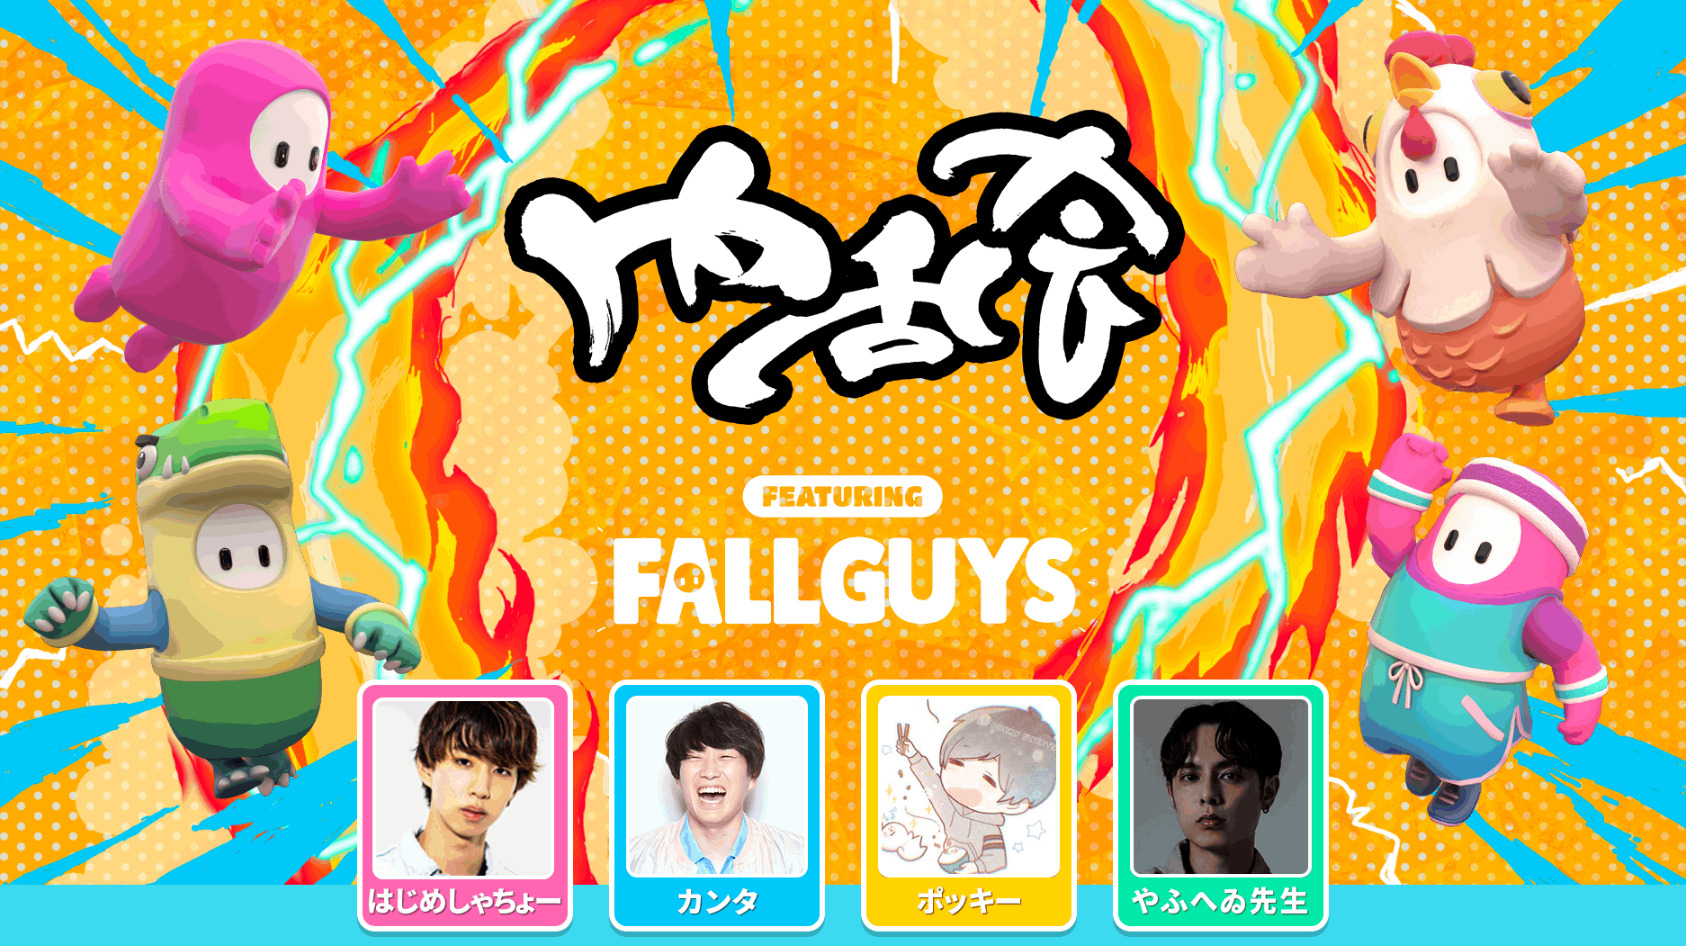 【フォールガイズ】UUUM主催のイベント「内乱会 featuring Fall Guys」が7/10に開催！